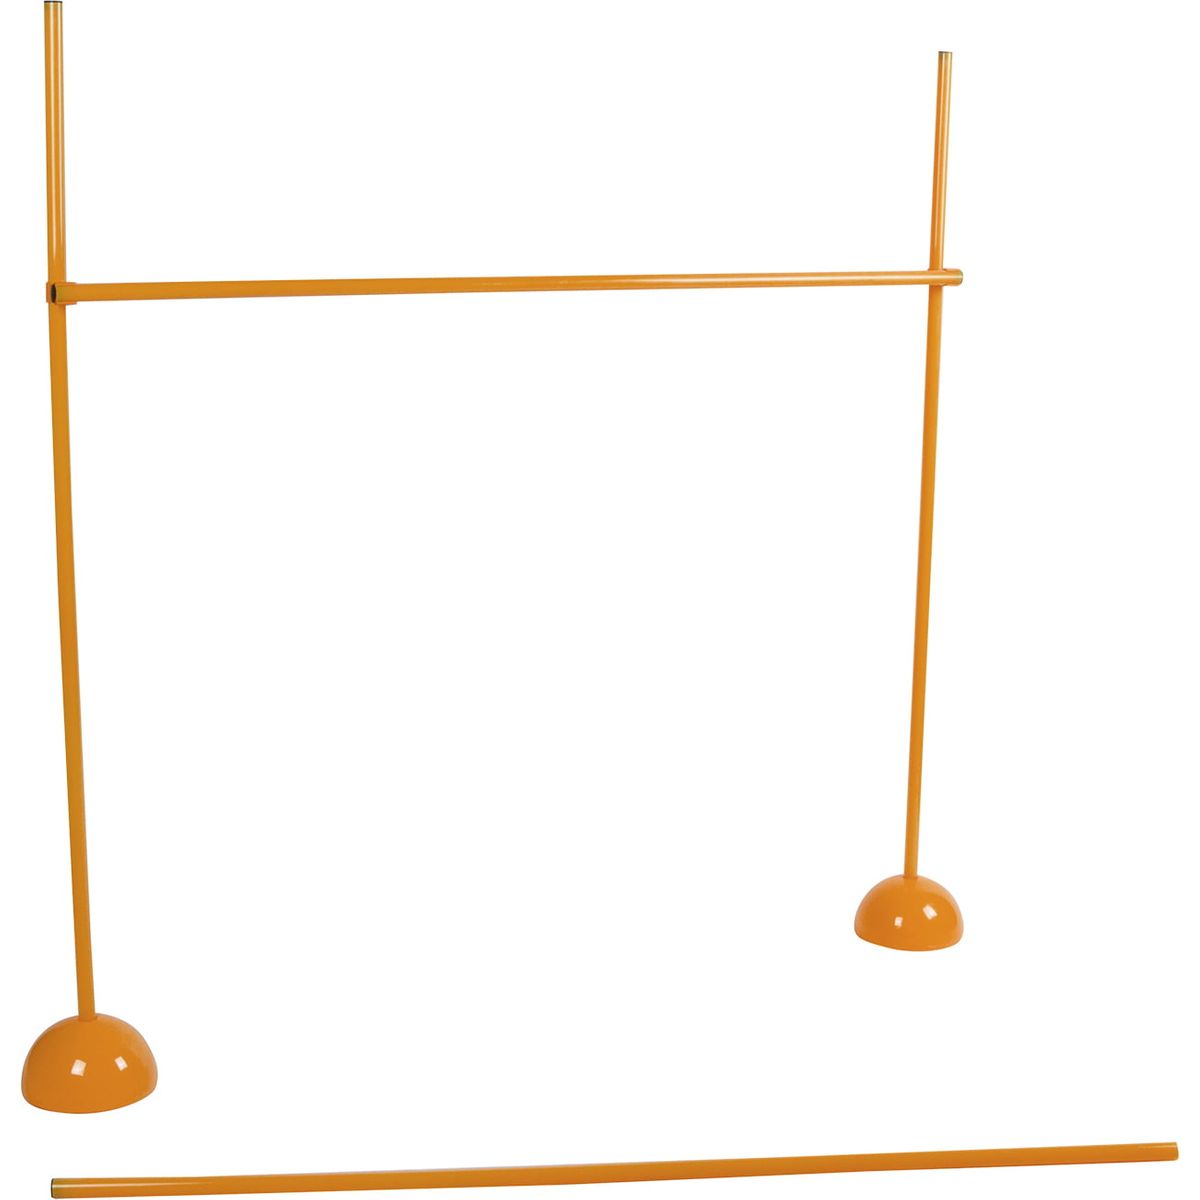 送料無料 アジリティサッカートレーニング アジャスタブルハードルポールセット Trademark Innovations (オレンジ) 楽天海外通販 Agility Soccer Training Adjustable Hurdles Poles Set by Trademark Innov